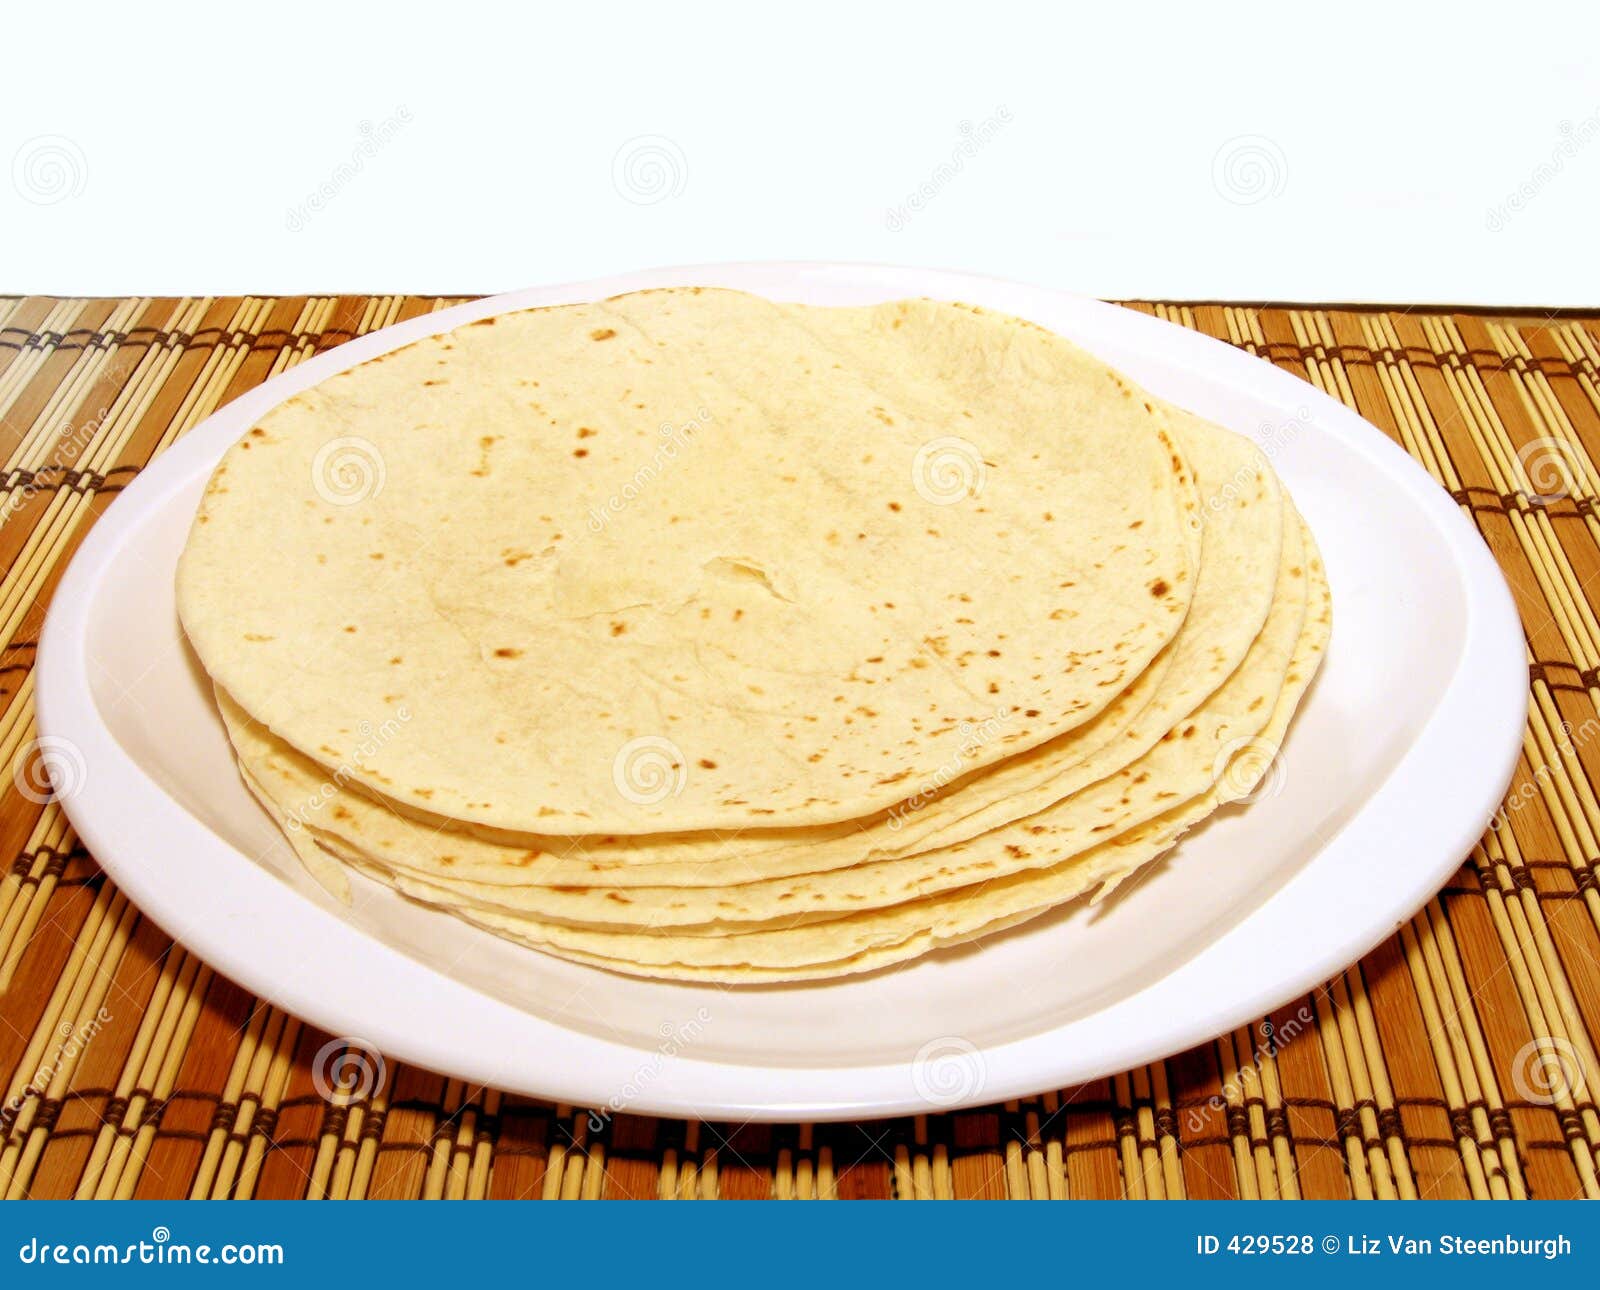 clipart tortillas - photo #38